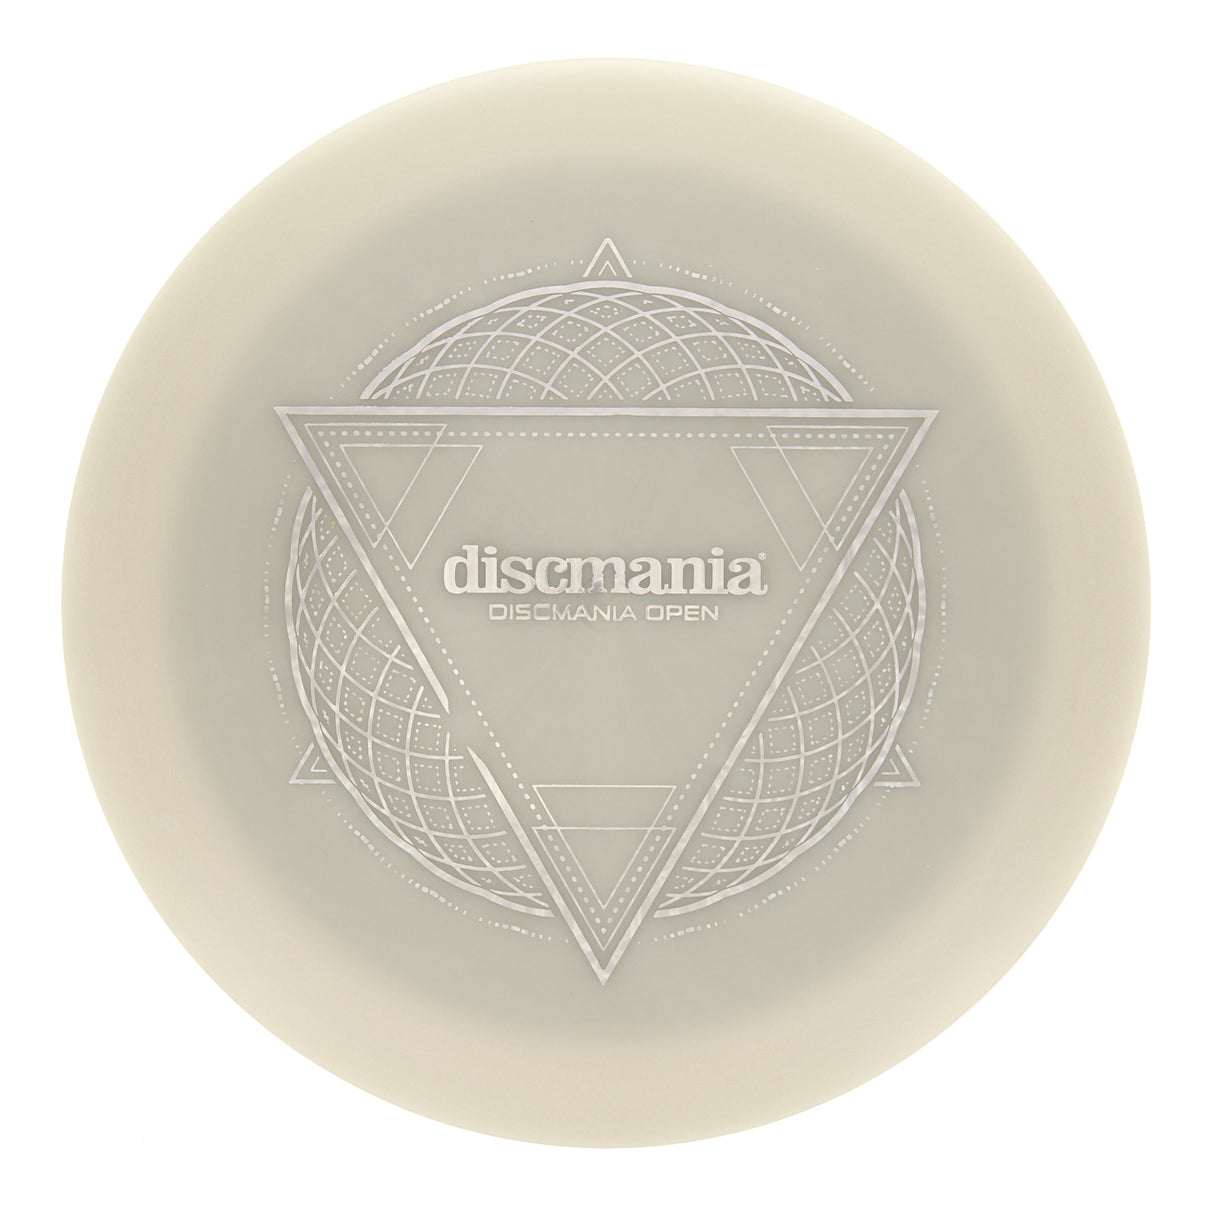 Discmania Enigma - Discmania Open Stamp Neo Lumen 175g | Style 0005